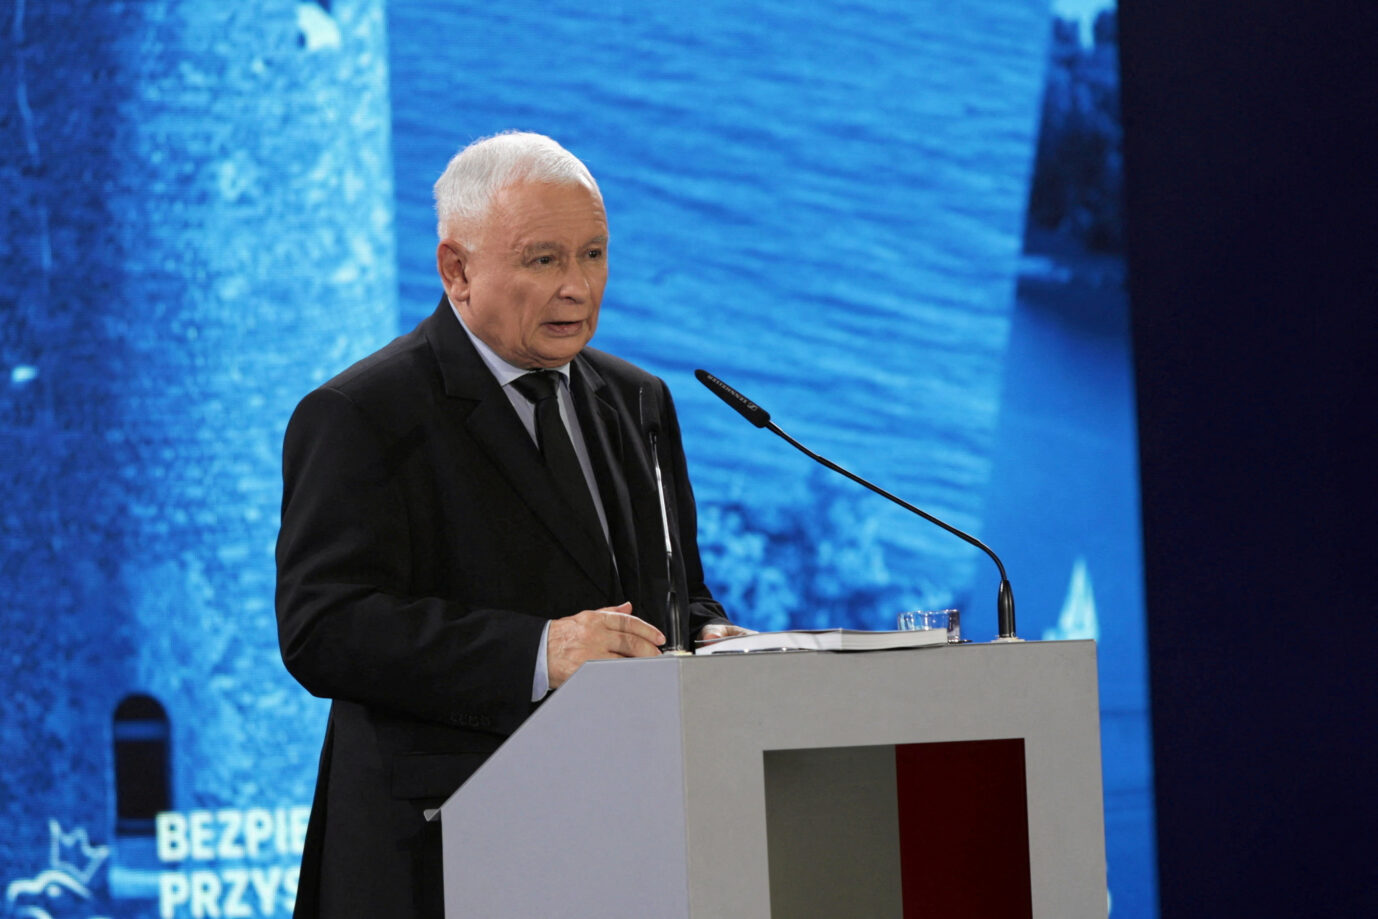 Auf dem Bild ist der Vorsitzende der PiS-Partei, Jarosław Kaczyński, während eines Parteitages zu sehen. (Themenbild/Symbolbild) 09.09.2023